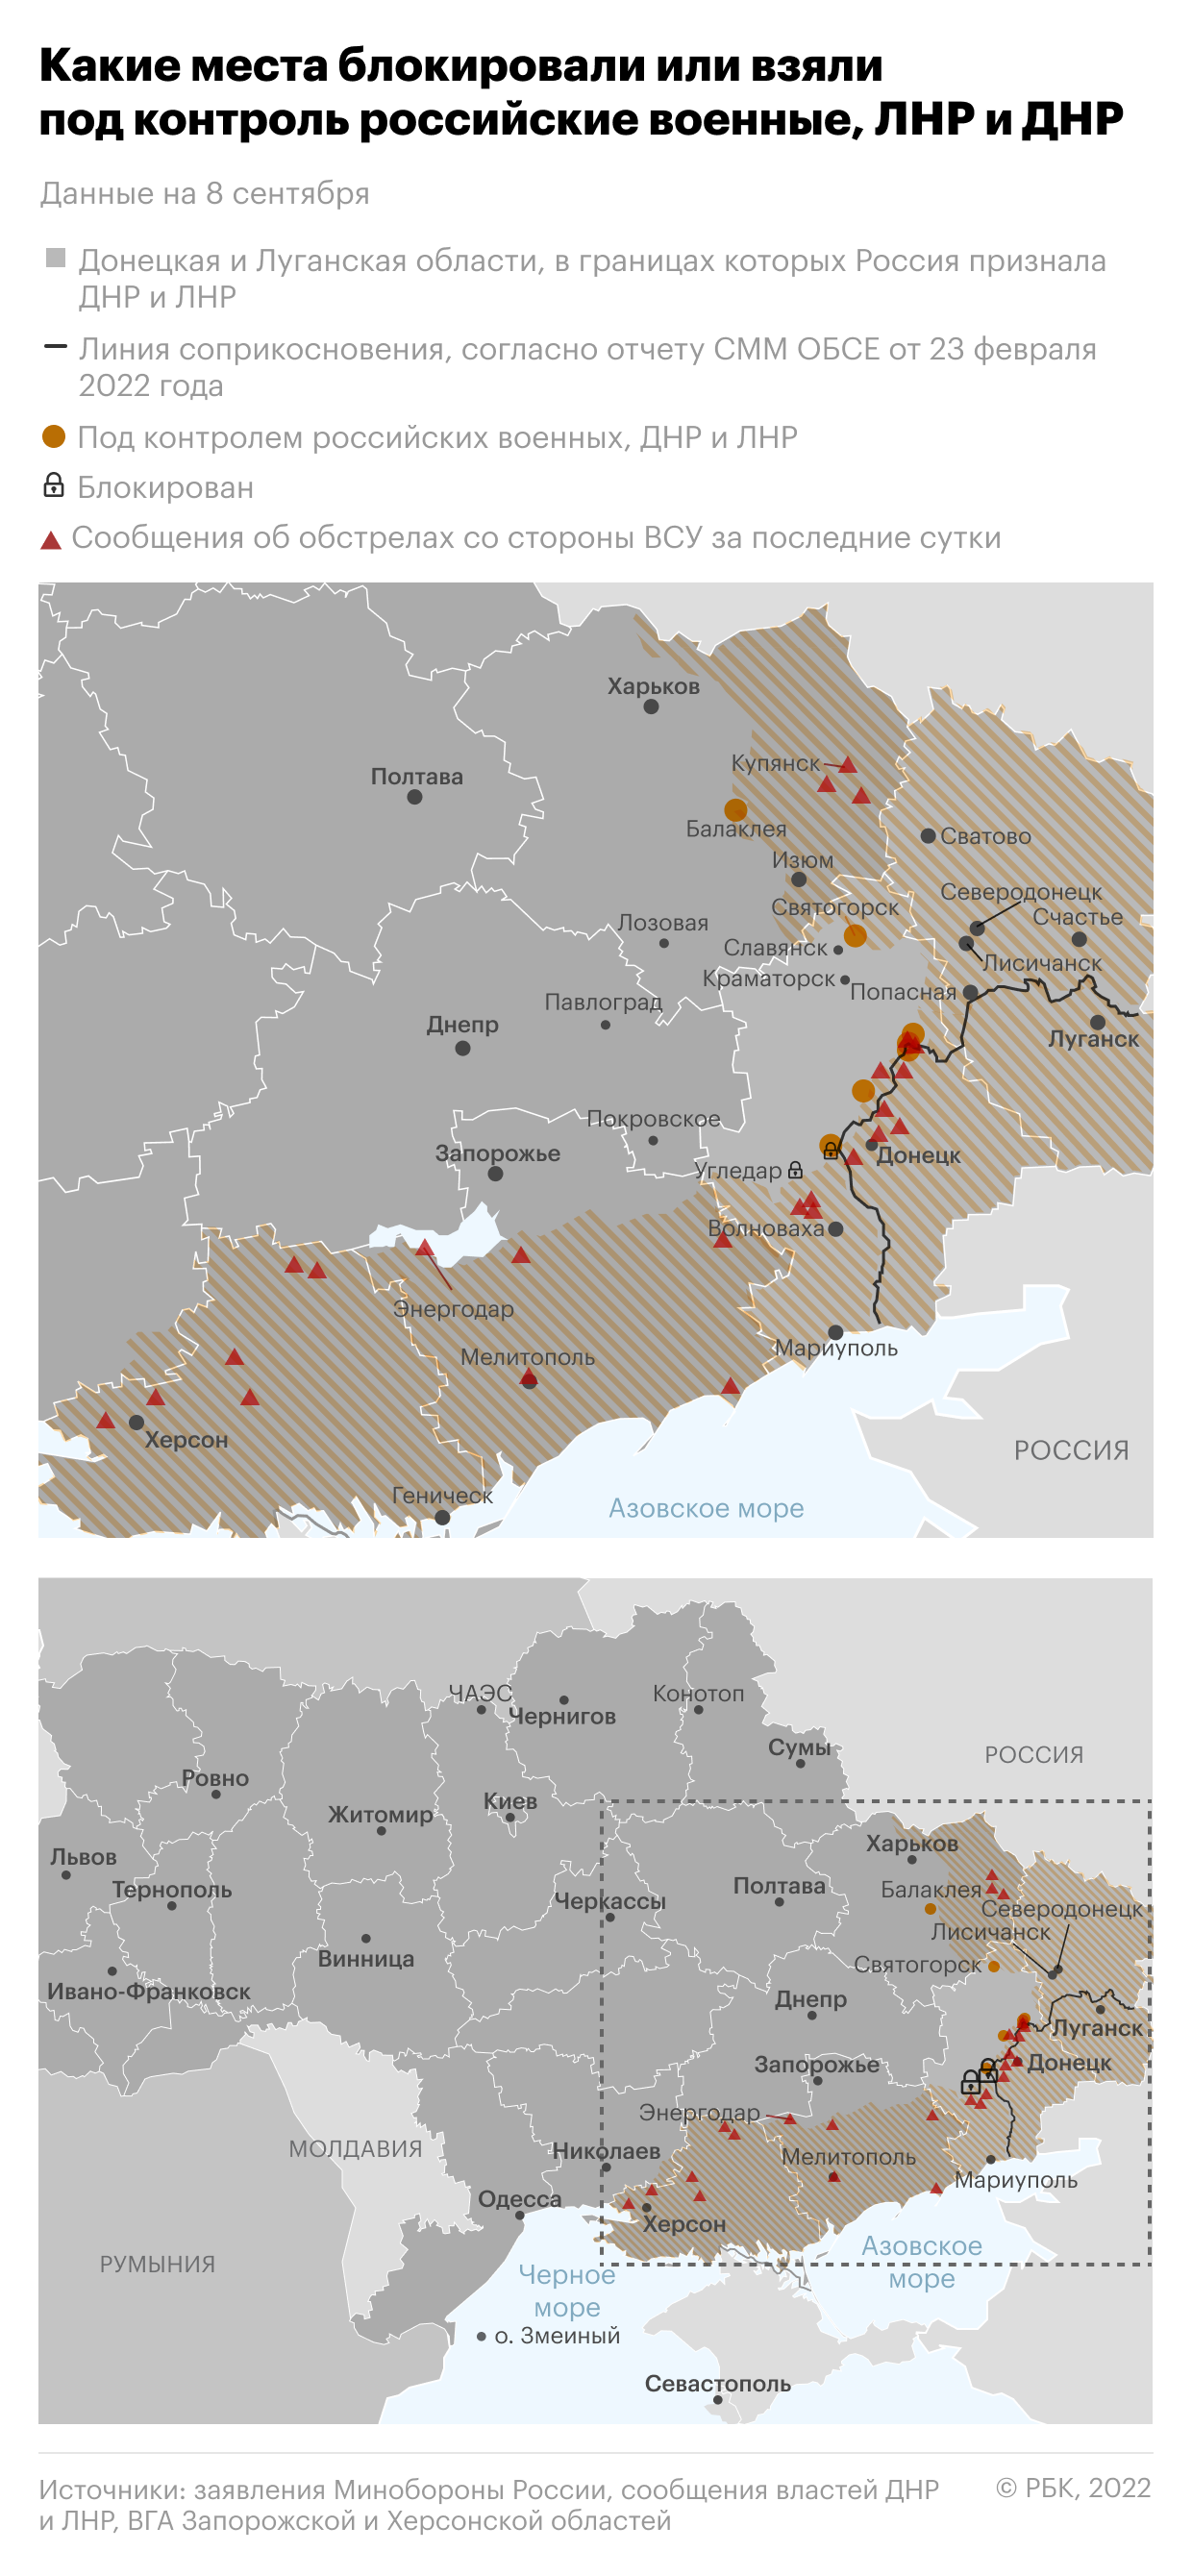 Какие места на Украине взяли под контроль российские военные. Карта"/>













